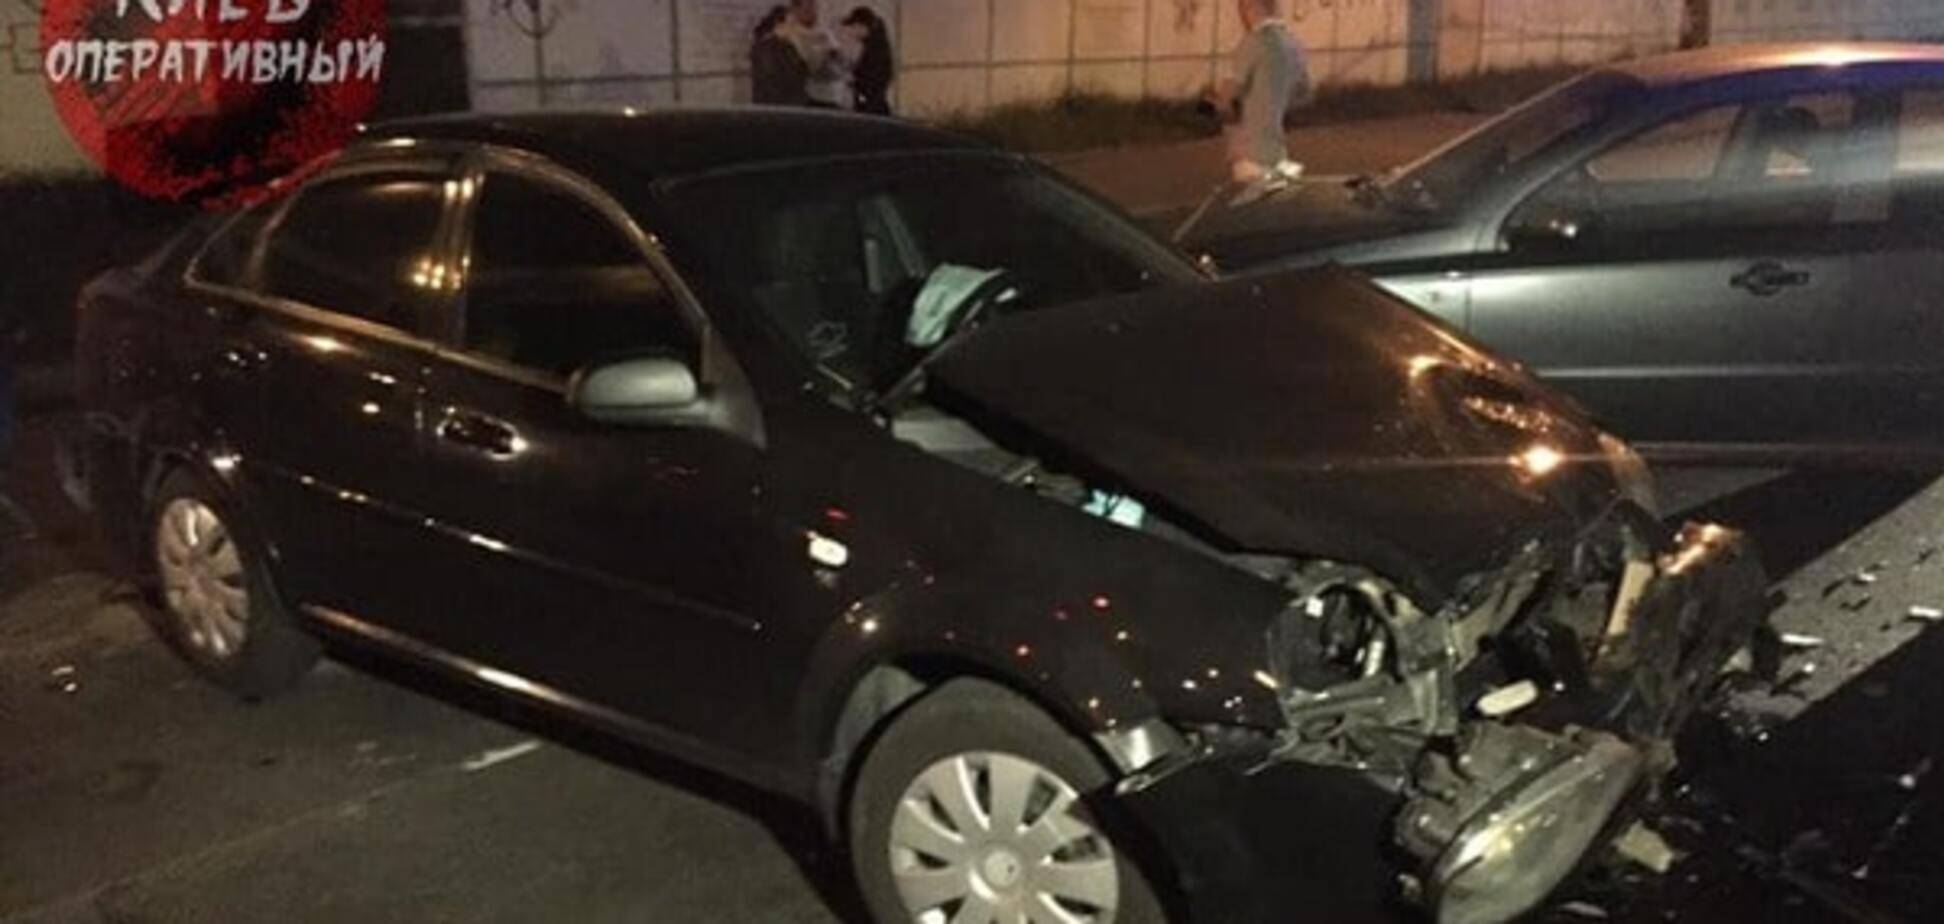 В Киеве пьяный водитель разбил три авто на светофоре: опубликованы фото